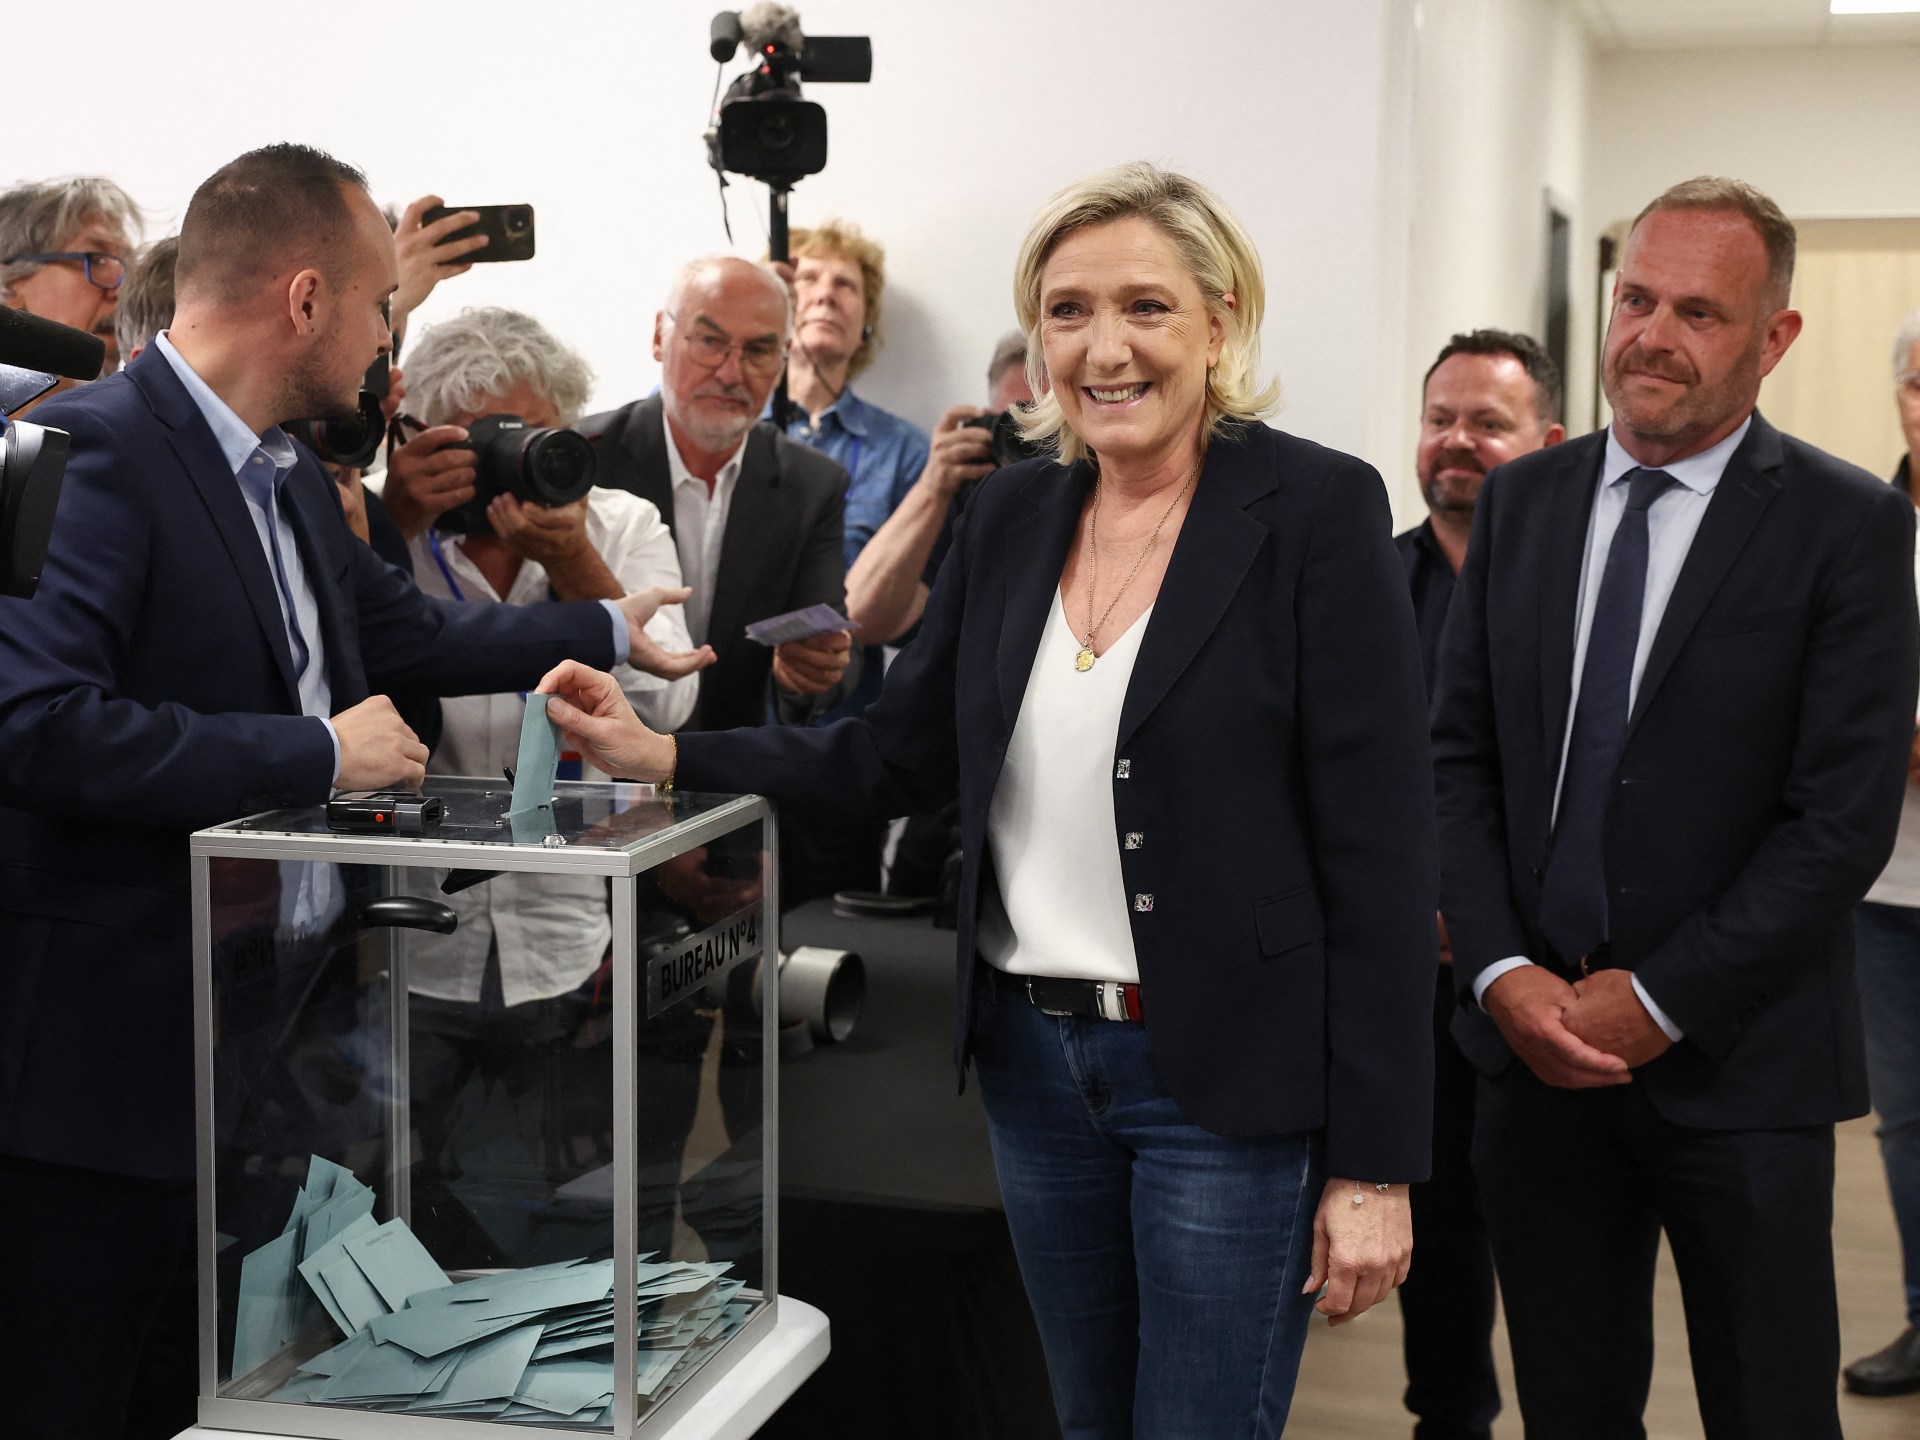 استطلاعات الرأي تظهر تقدم اليمين المتطرف في فرنسا في الجولة الأولى من الانتخابات  أخبار الانتخابات